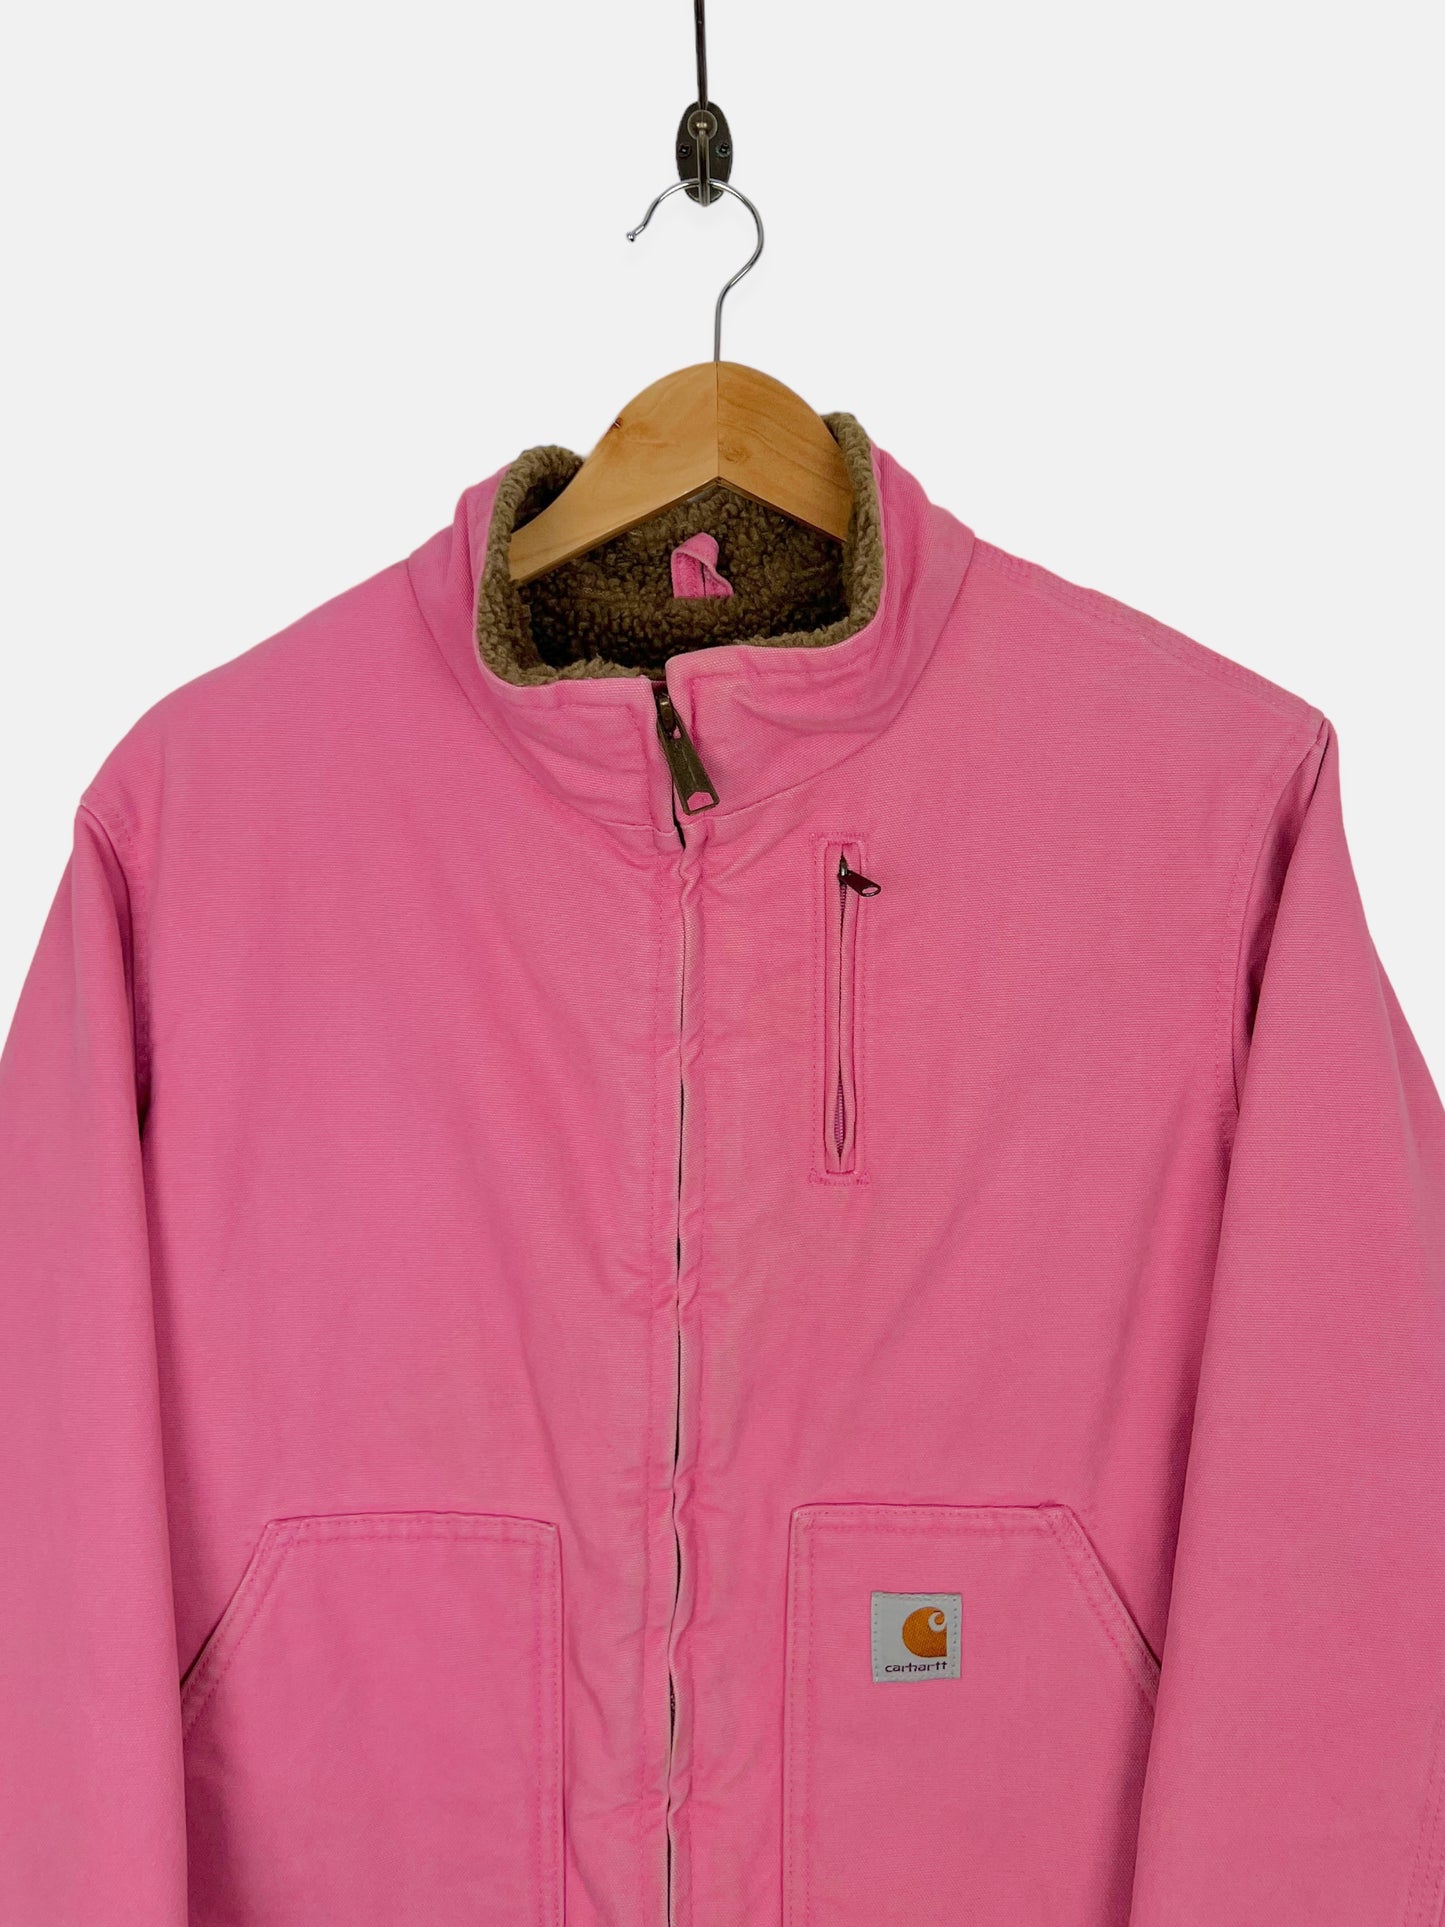 90's Carhartt Heavy Duty Sherpa Lined Vintage Jacket Size 12-14